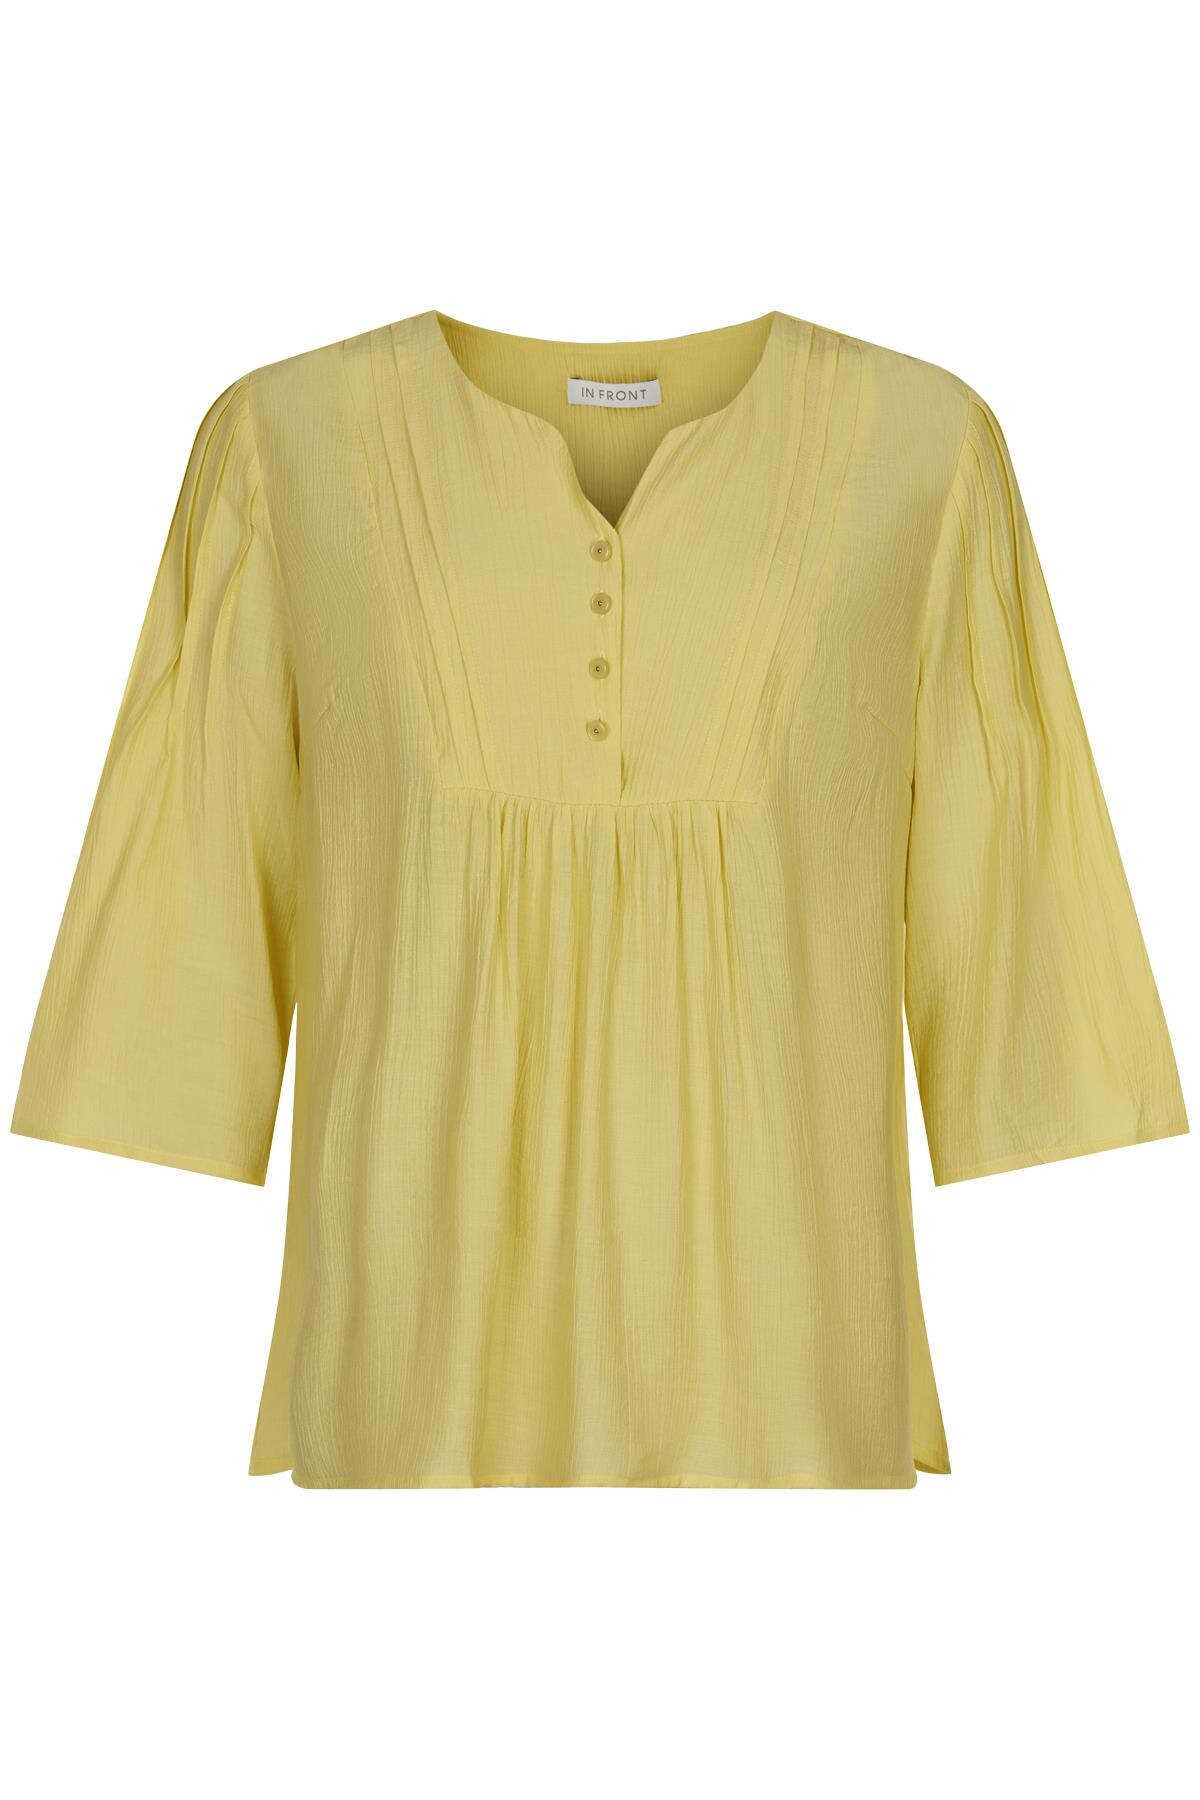 Se IN FRONT Mejse Bluse, Farve: Light Yellow, Størrelse: L, Dame hos Infront Women